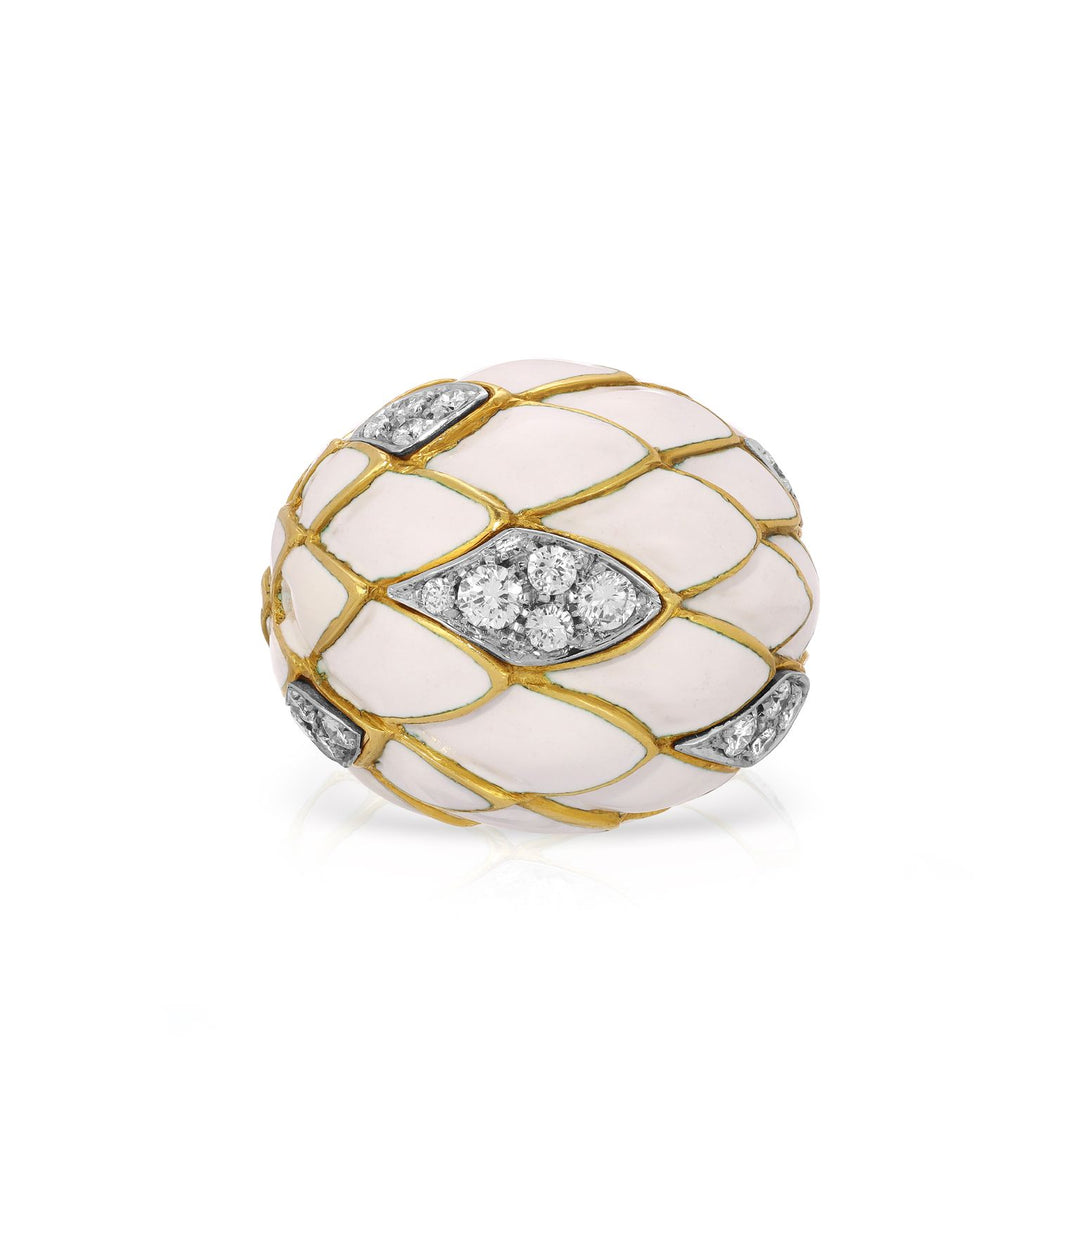 Diamond & White Enamel Dome Ring in 18K Gold